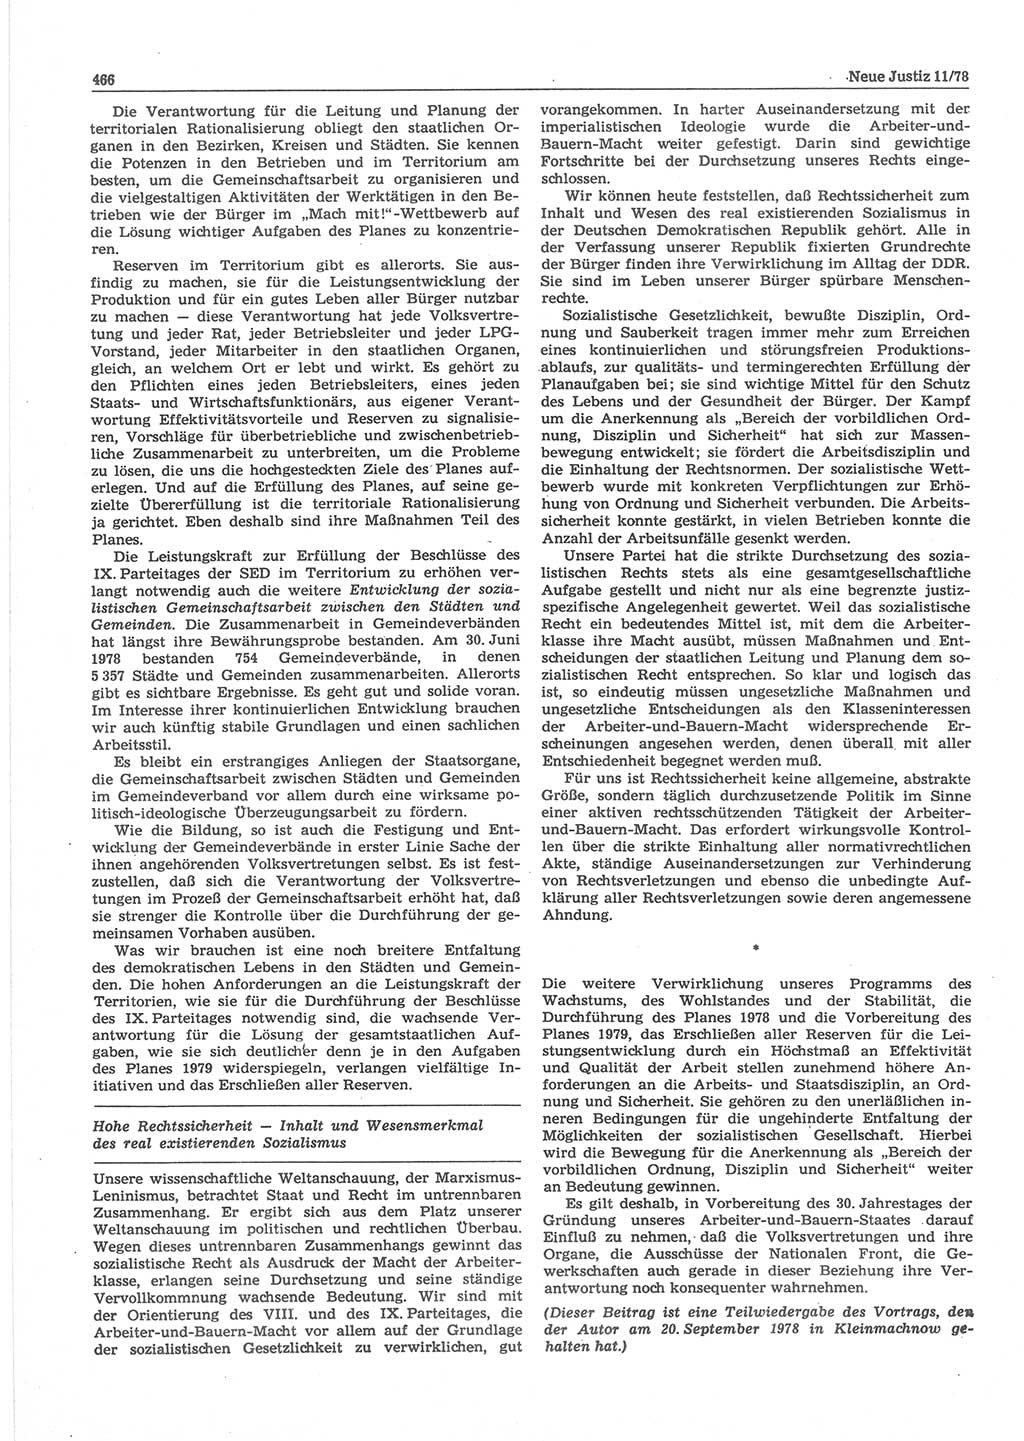 Neue Justiz (NJ), Zeitschrift für sozialistisches Recht und Gesetzlichkeit [Deutsche Demokratische Republik (DDR)], 32. Jahrgang 1978, Seite 466 (NJ DDR 1978, S. 466)